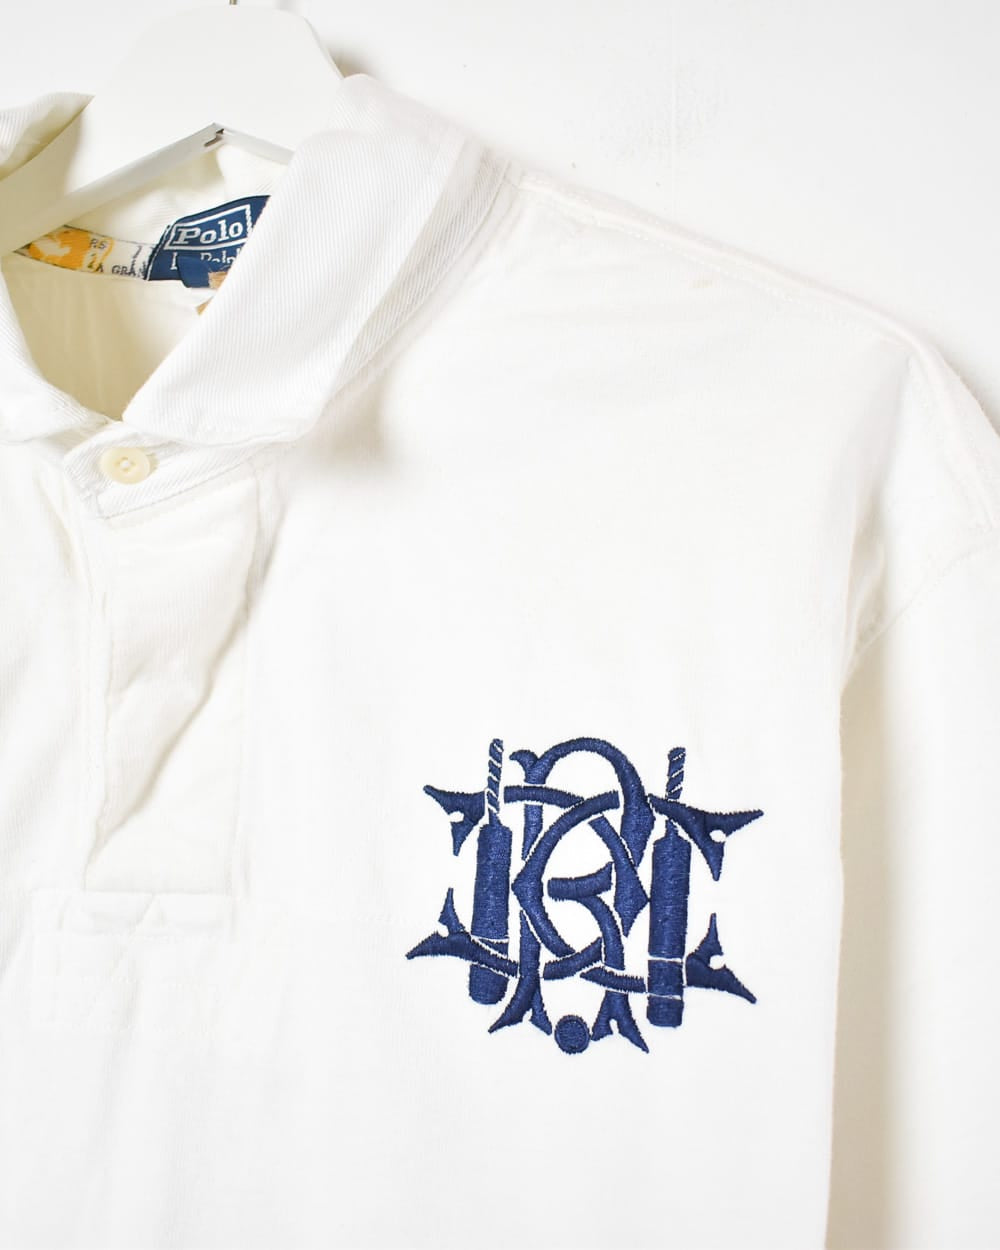 White Ralph Lauren Short Sleeved Polo Shirt - XX-Large